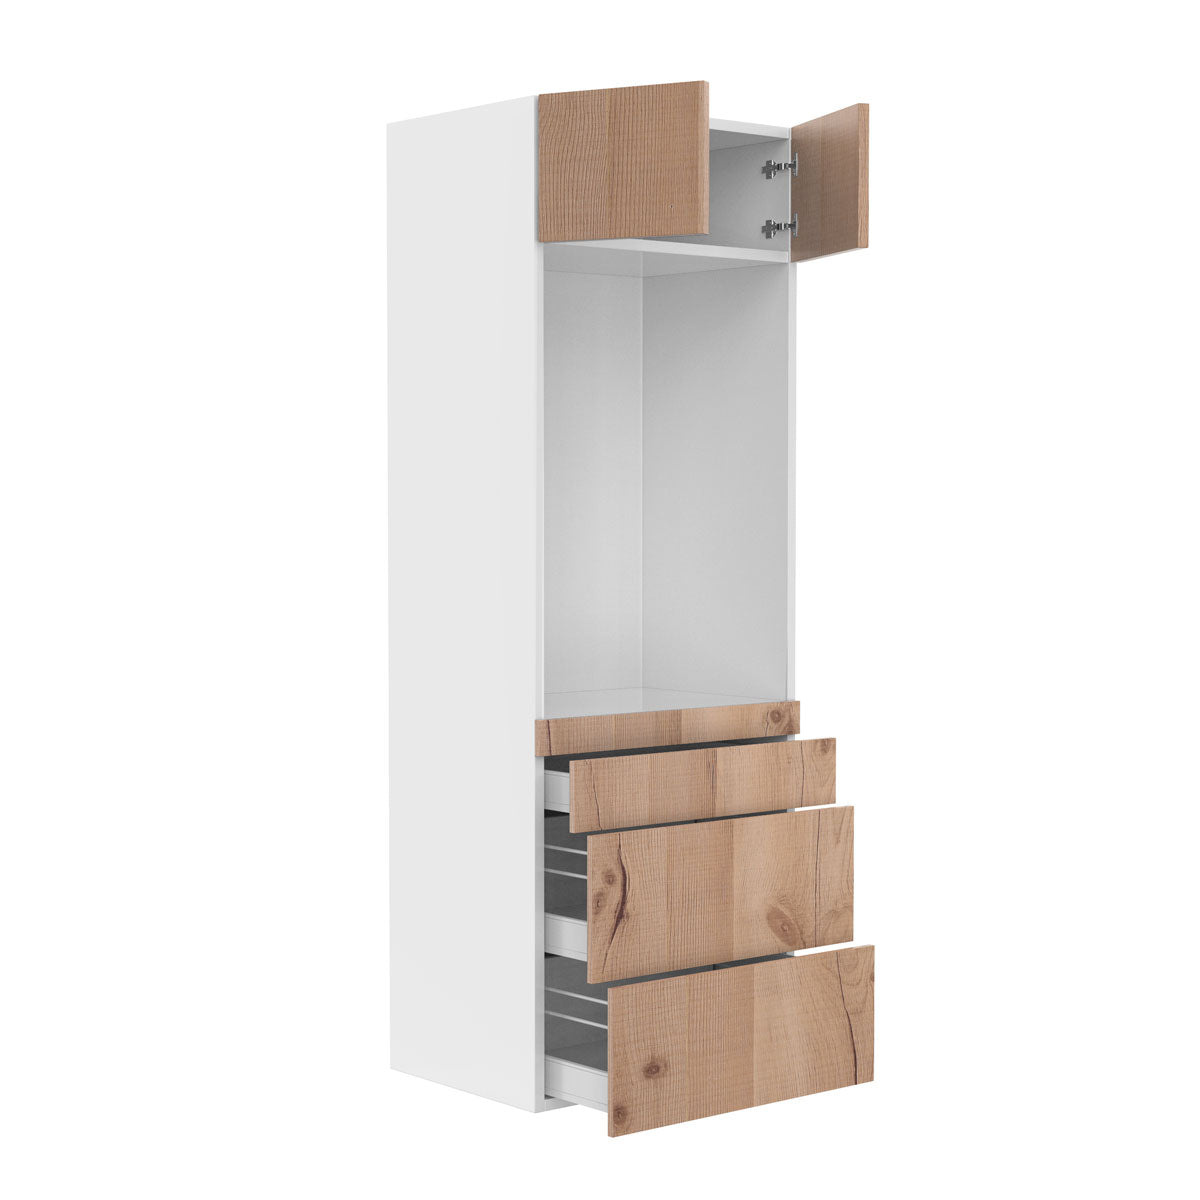 RTA - Rustic Oak - Single Oven Tall Cabinets | 30"W x 84"H x 24"D